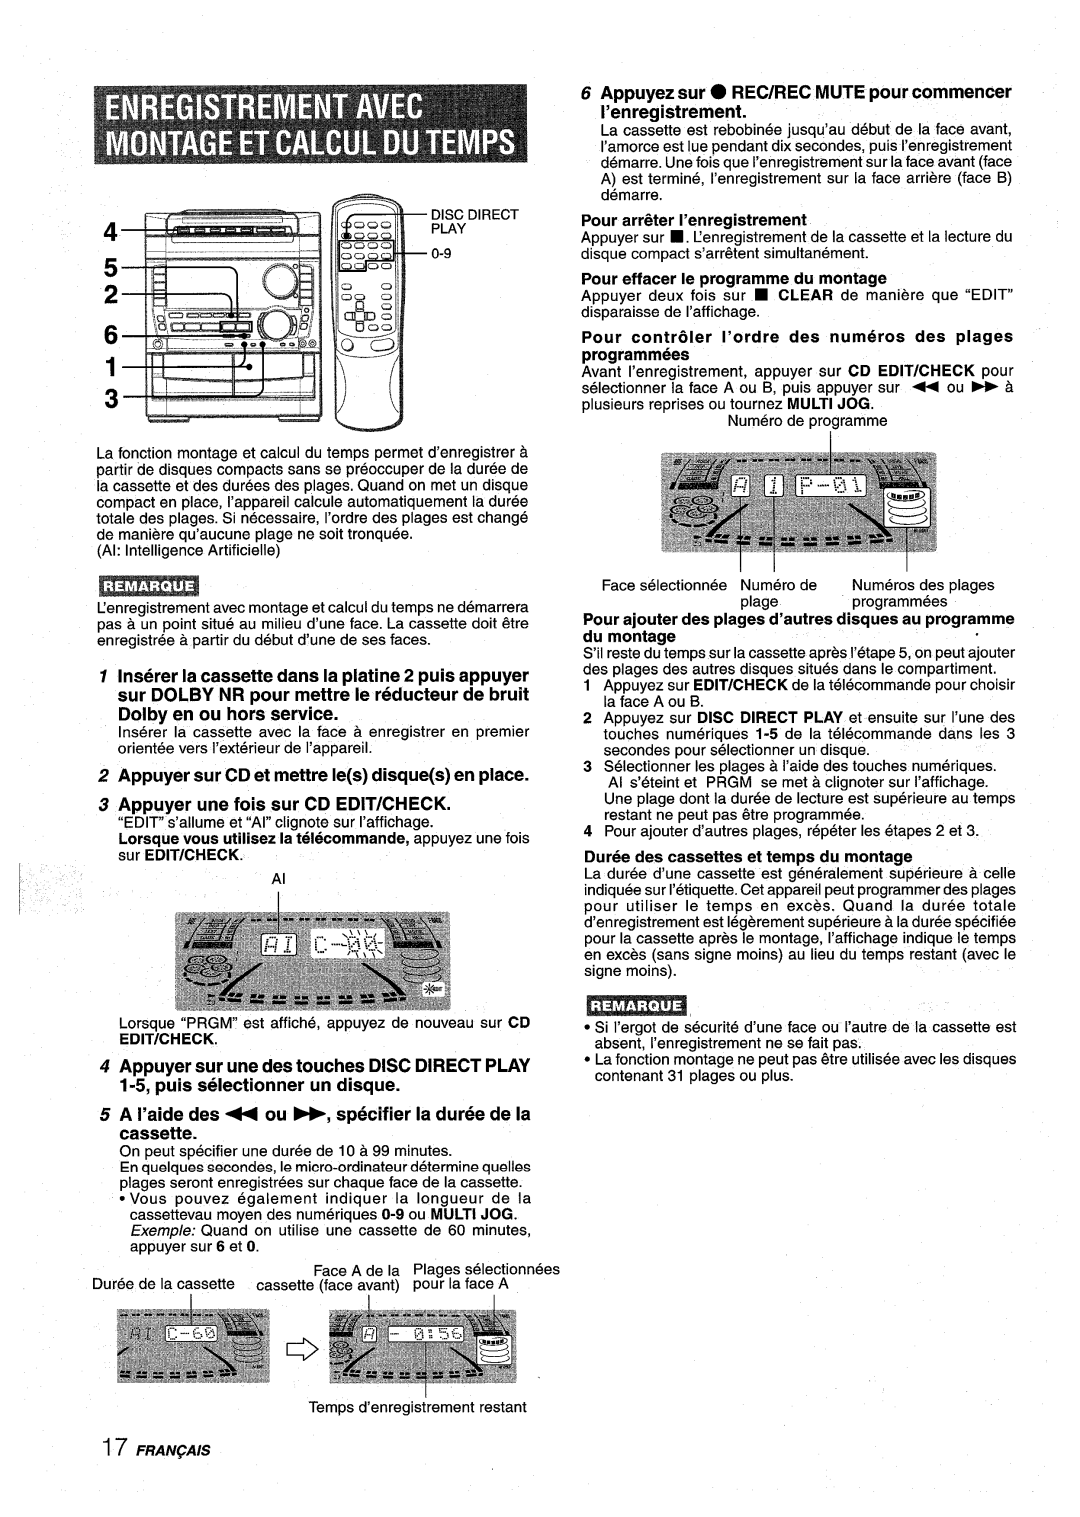 Sony NSX-A959 manual Appuyer sur CD et mettre Ies disques en place, Appuyer une fois sur CD EDITICHECK, Edit/Check 